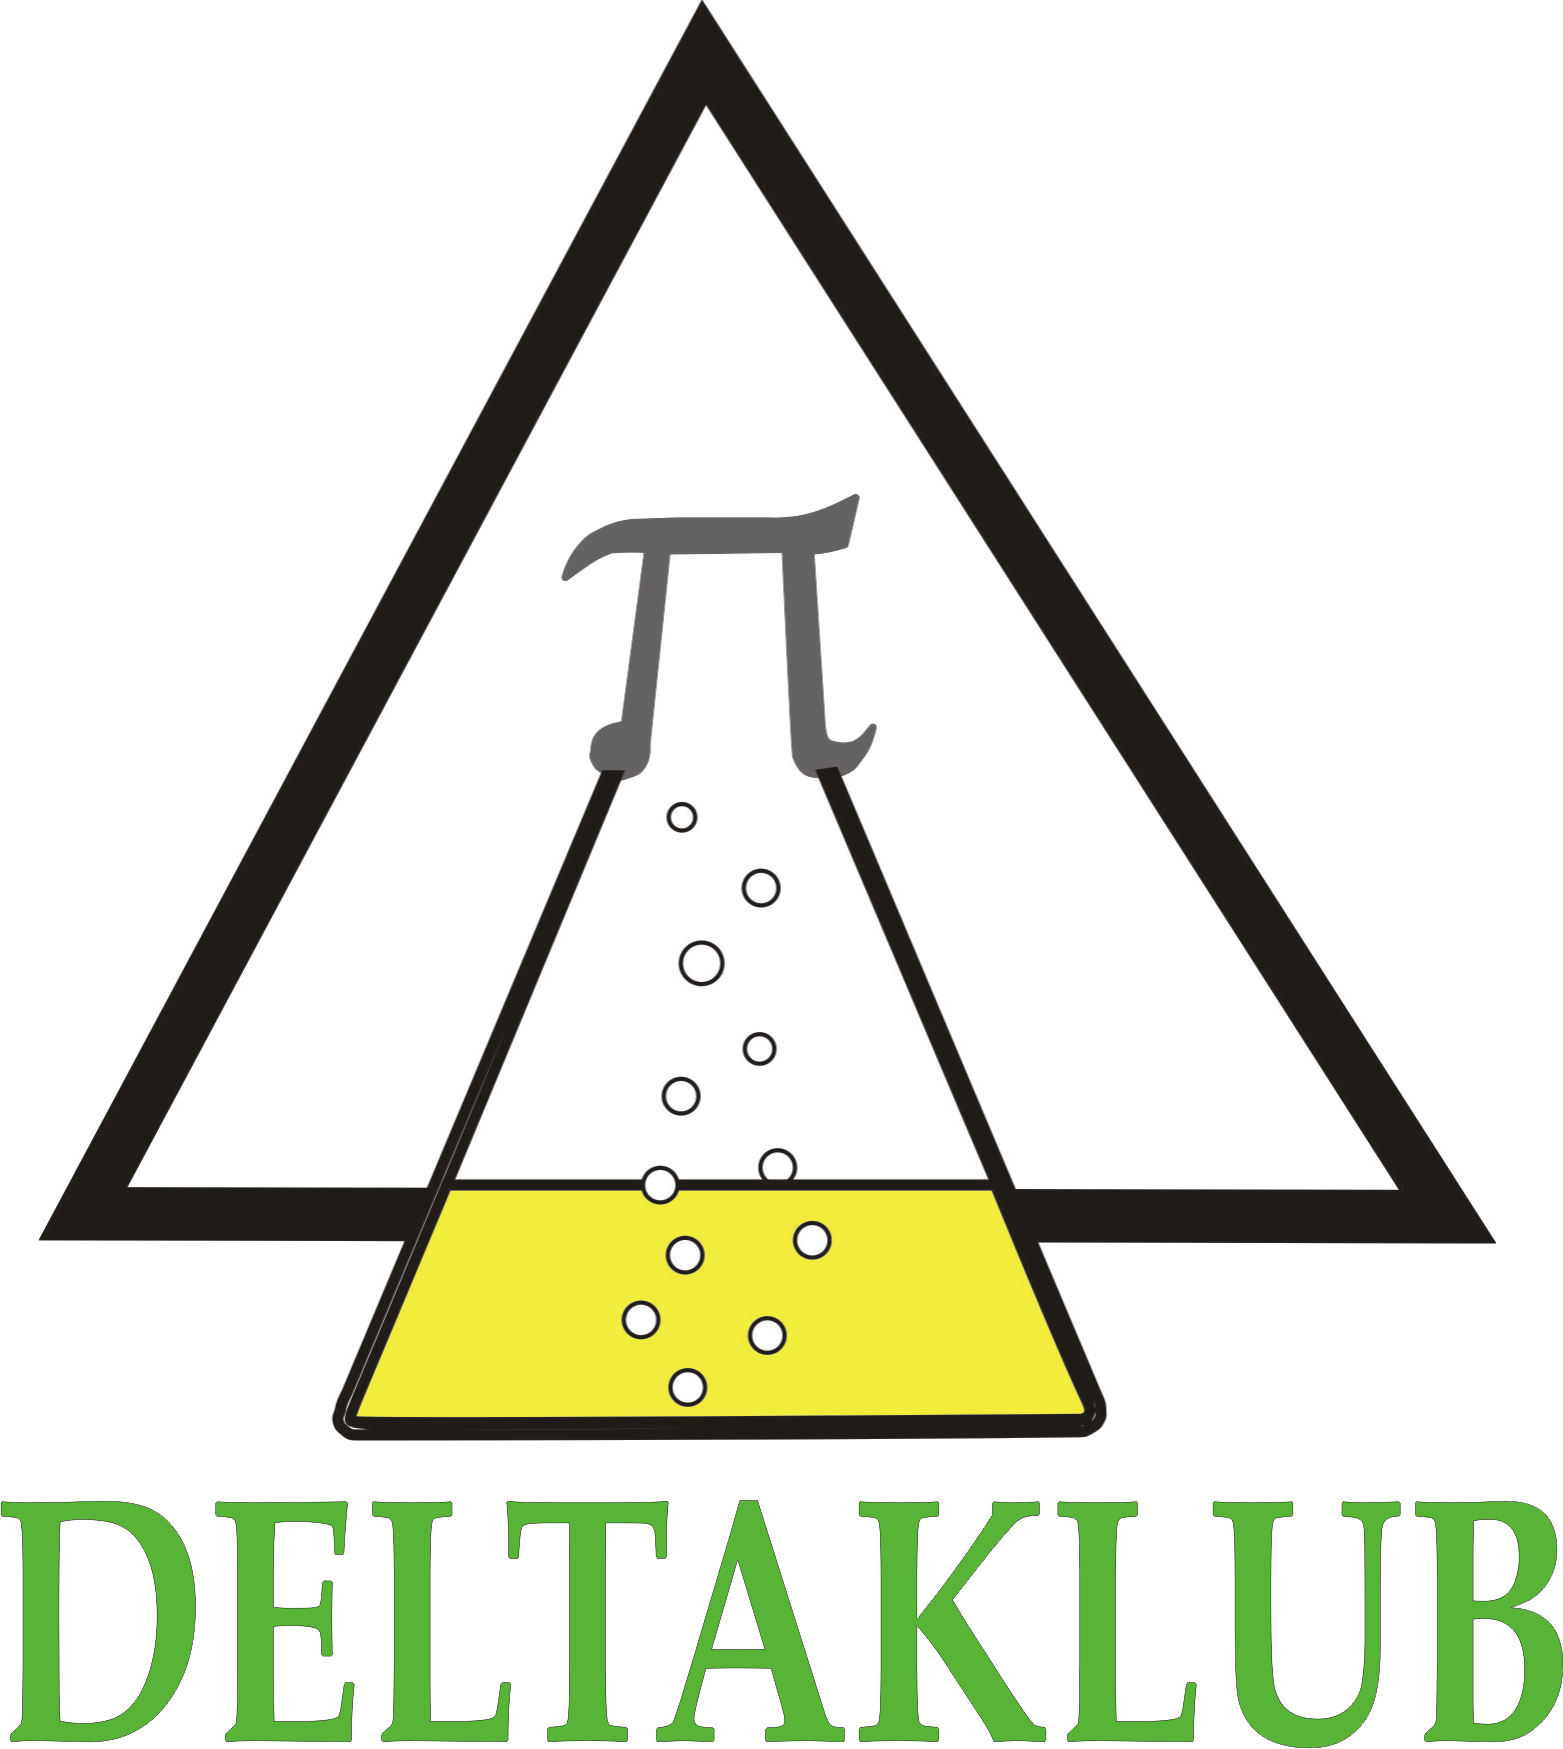 deltaklub logo